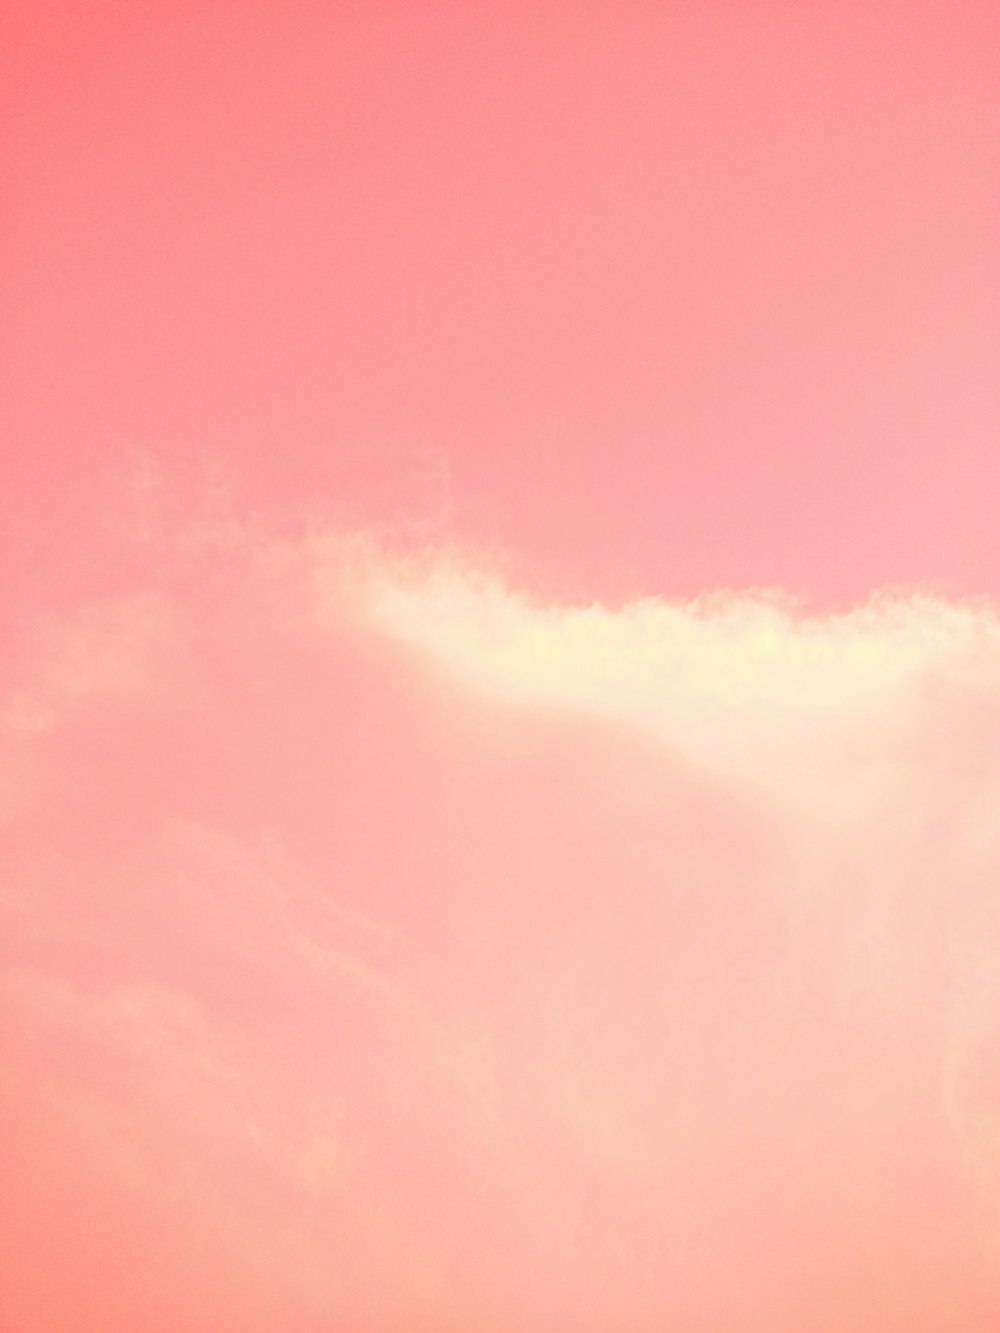 cielo nuvoloso rosa e azzurro